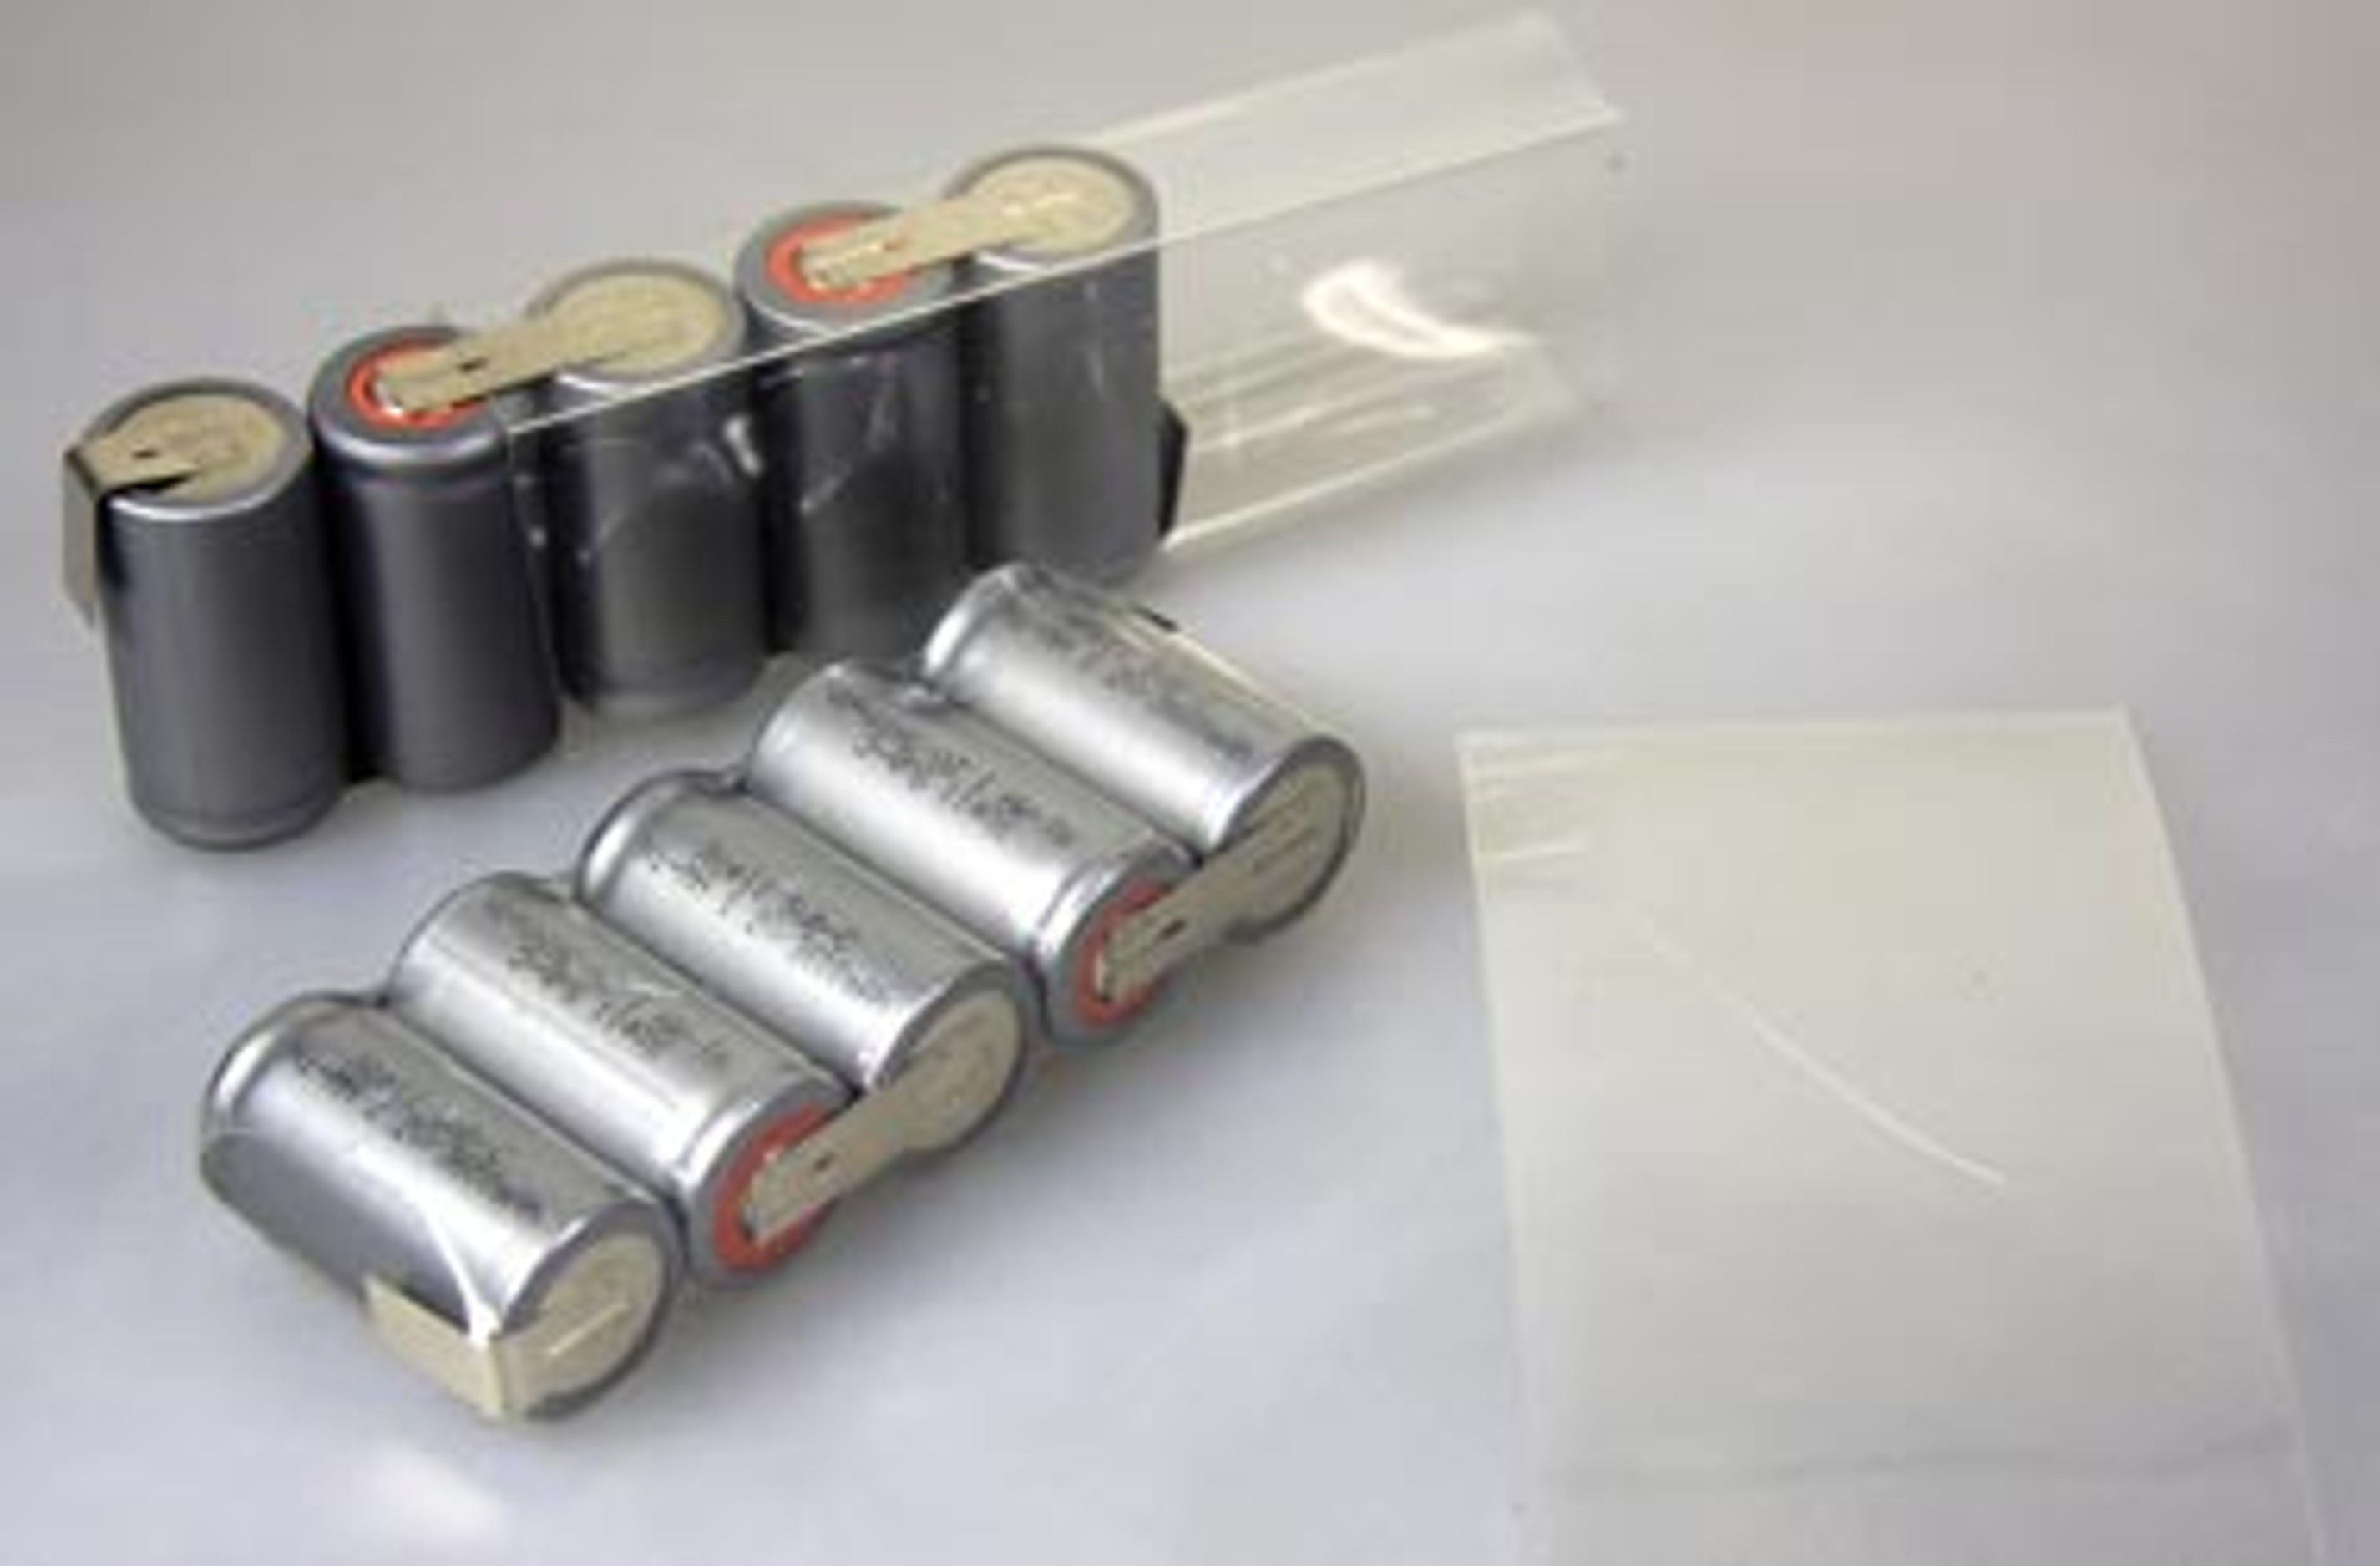 Heat shrink tube for batteries, 120 x 70 mm - 5 pce